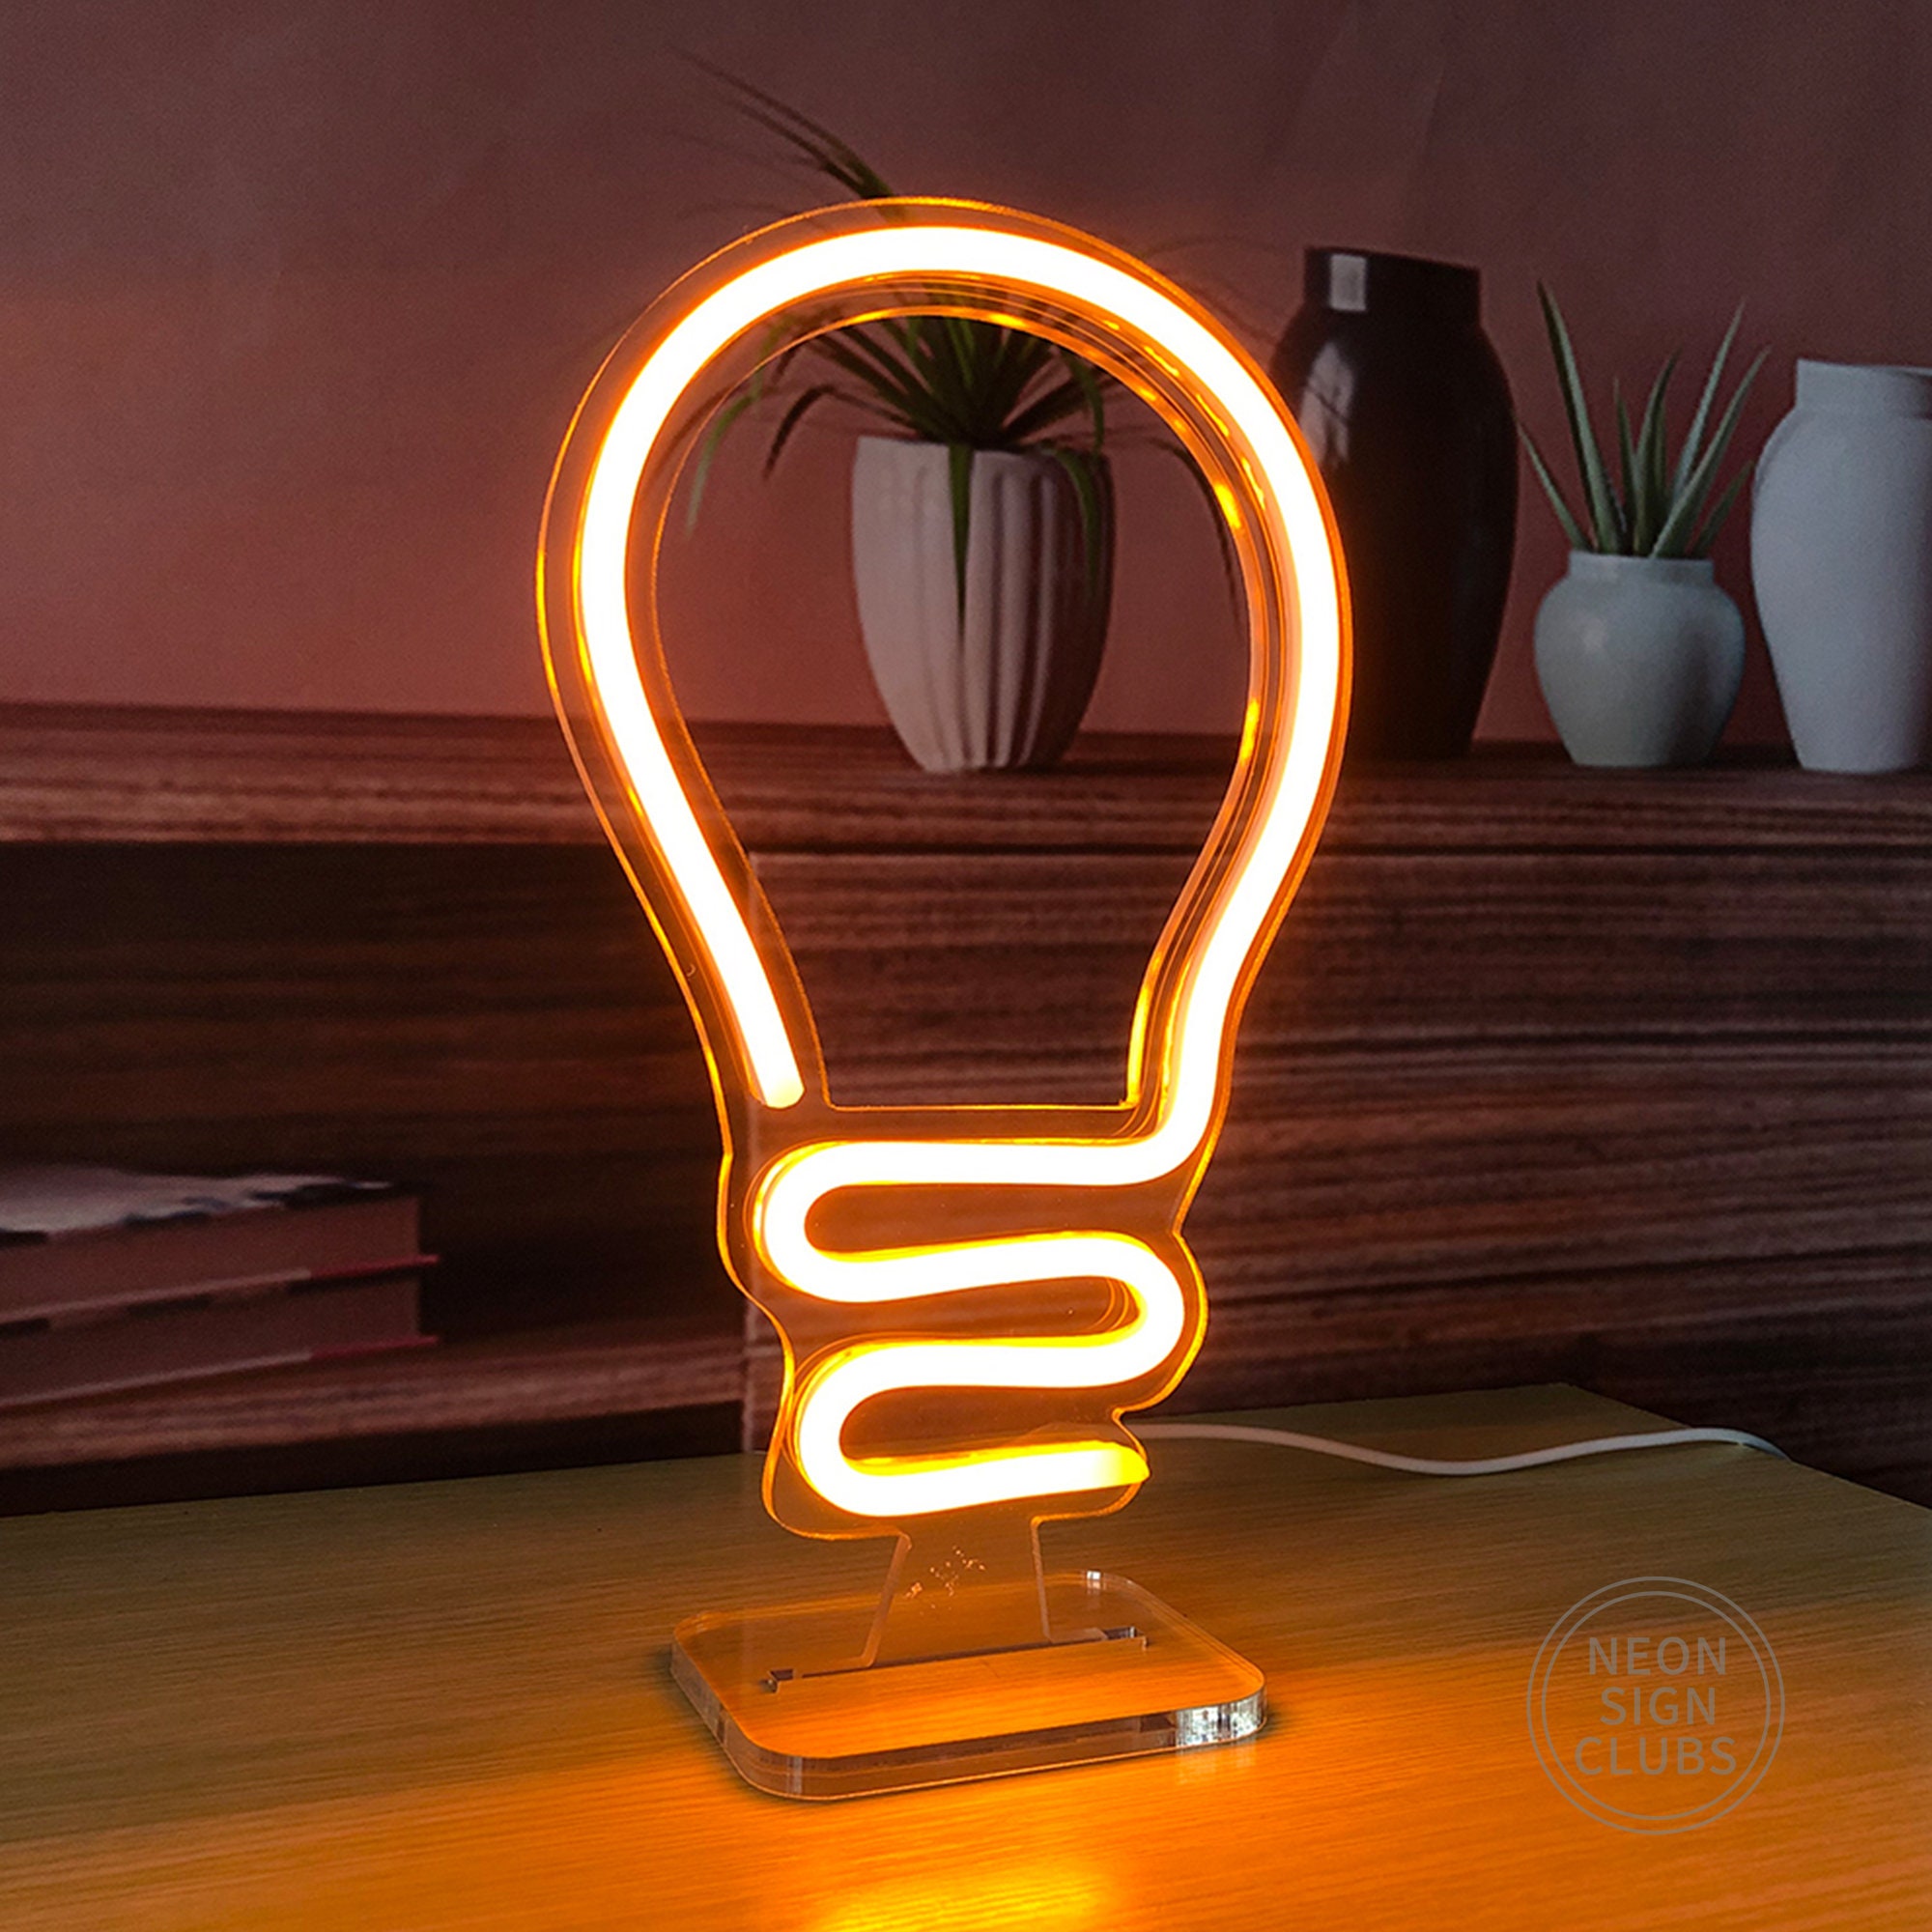 6x9.8 LED Neon Light Sign Sign USB Lamp Custom - Etsy UK